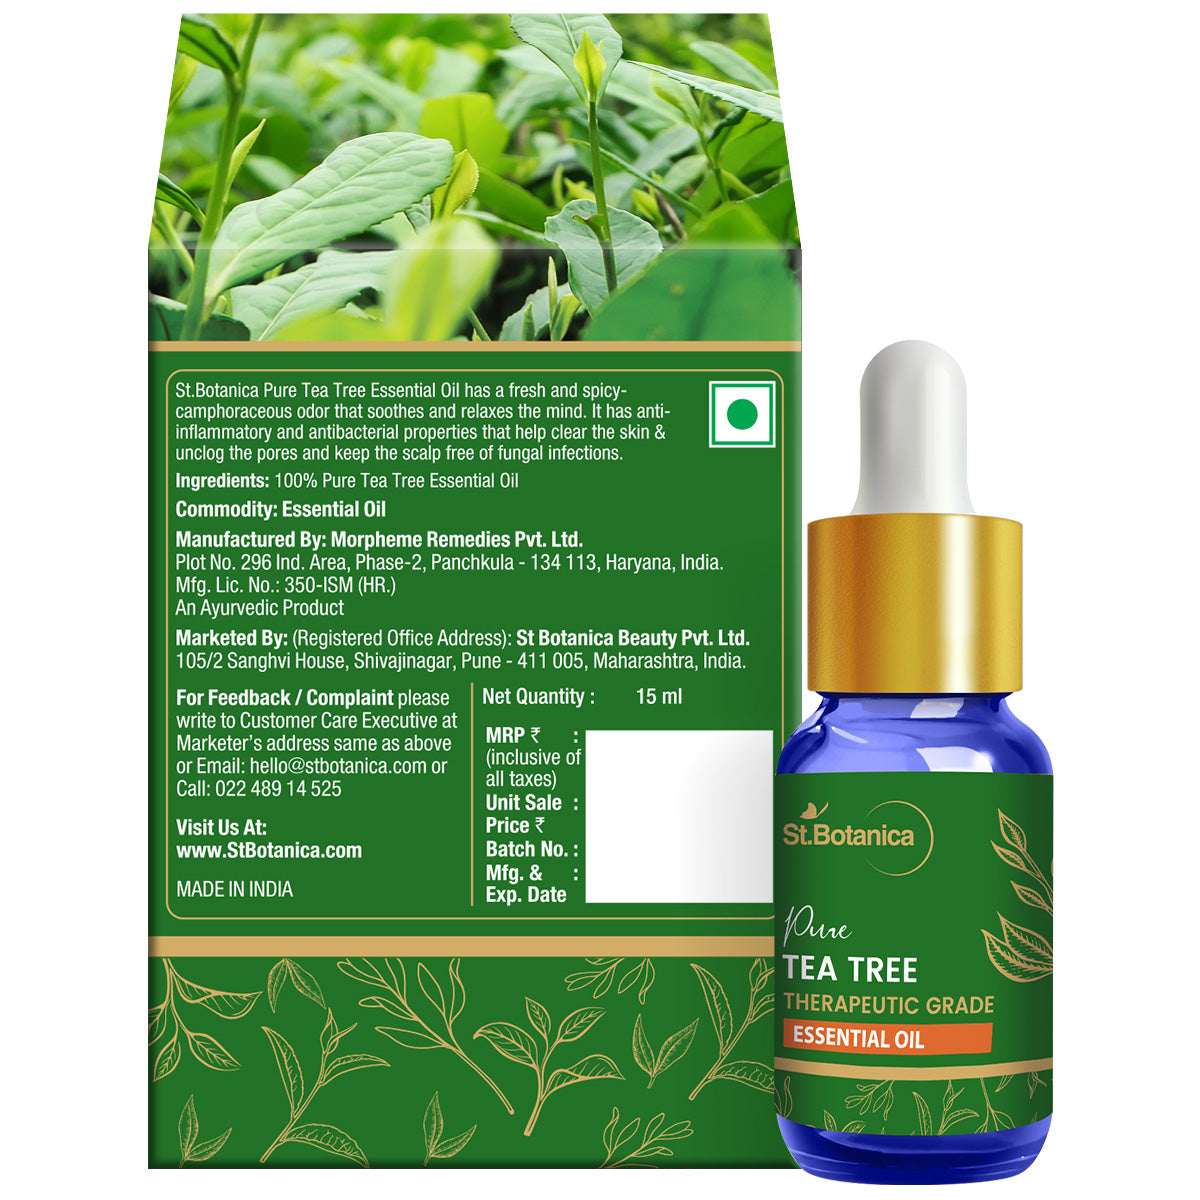 St.Botanica Pure Tea Tree Essential Oil, 15ml